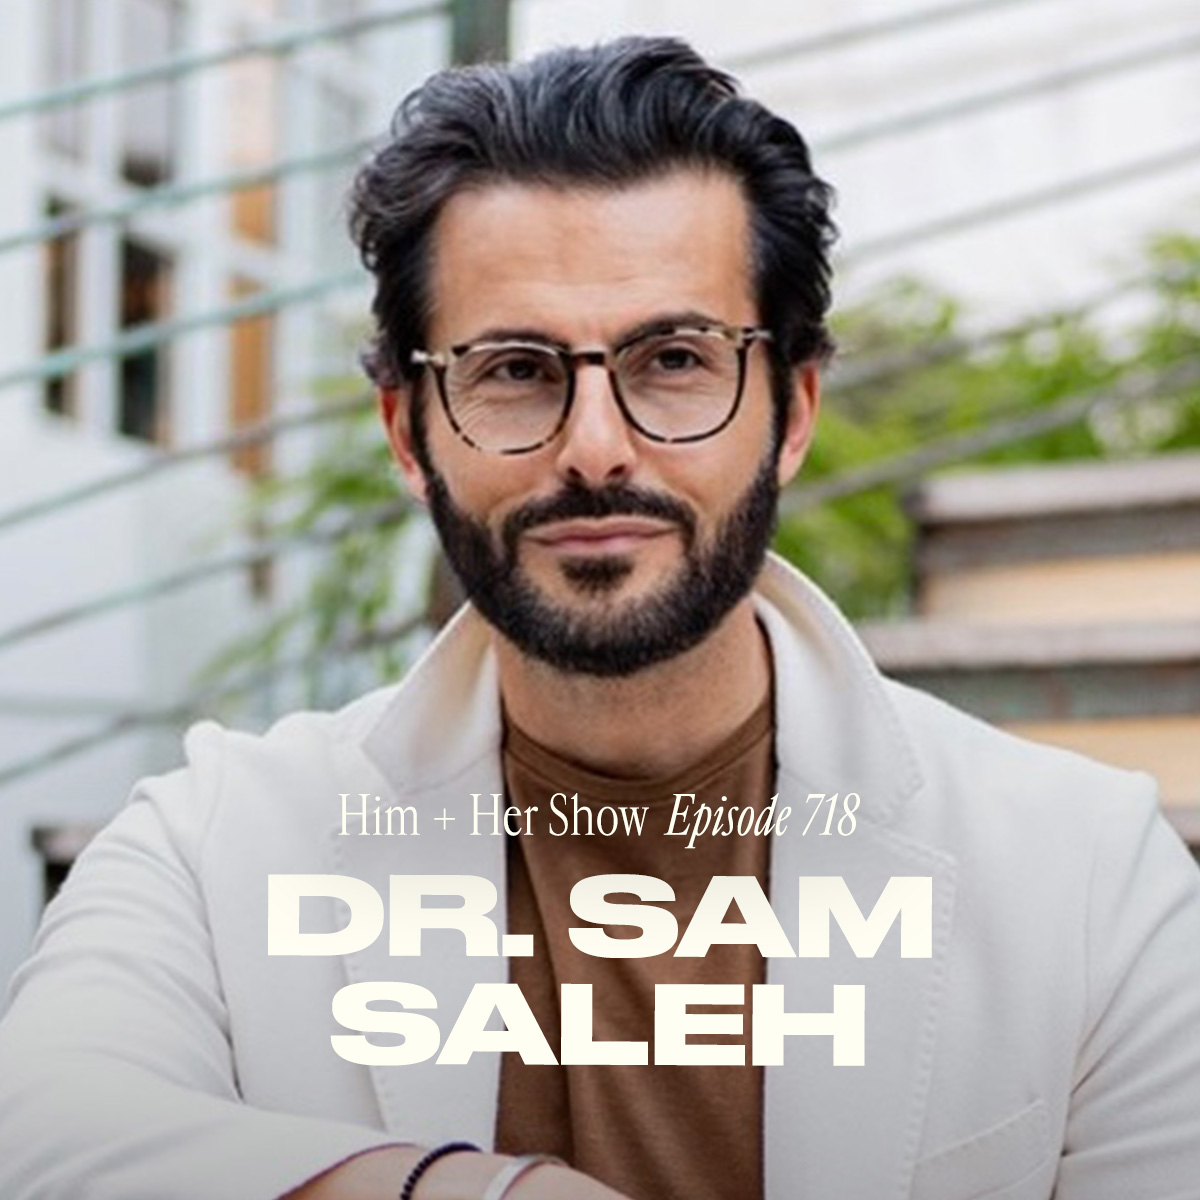 Dr. Sam Saleh